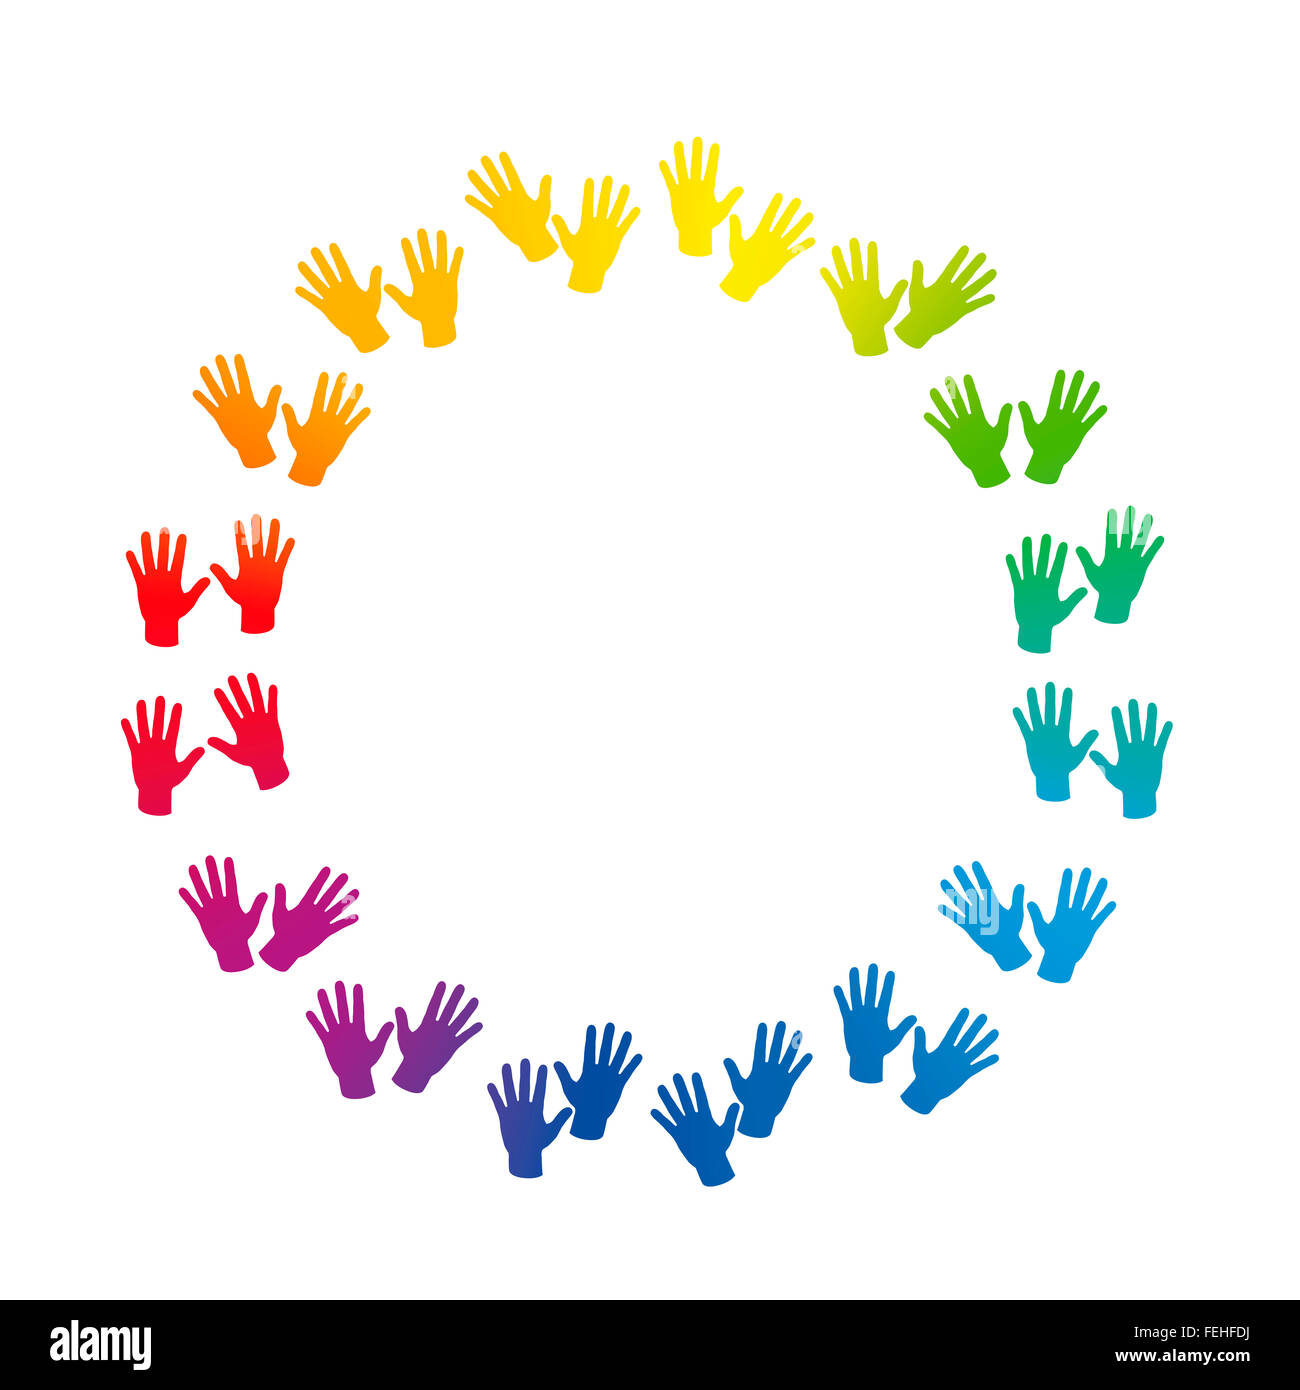 Hände - Regenbogen farbige Kreis Rahmen. Abbildung auf weißem Hintergrund. Stockfoto